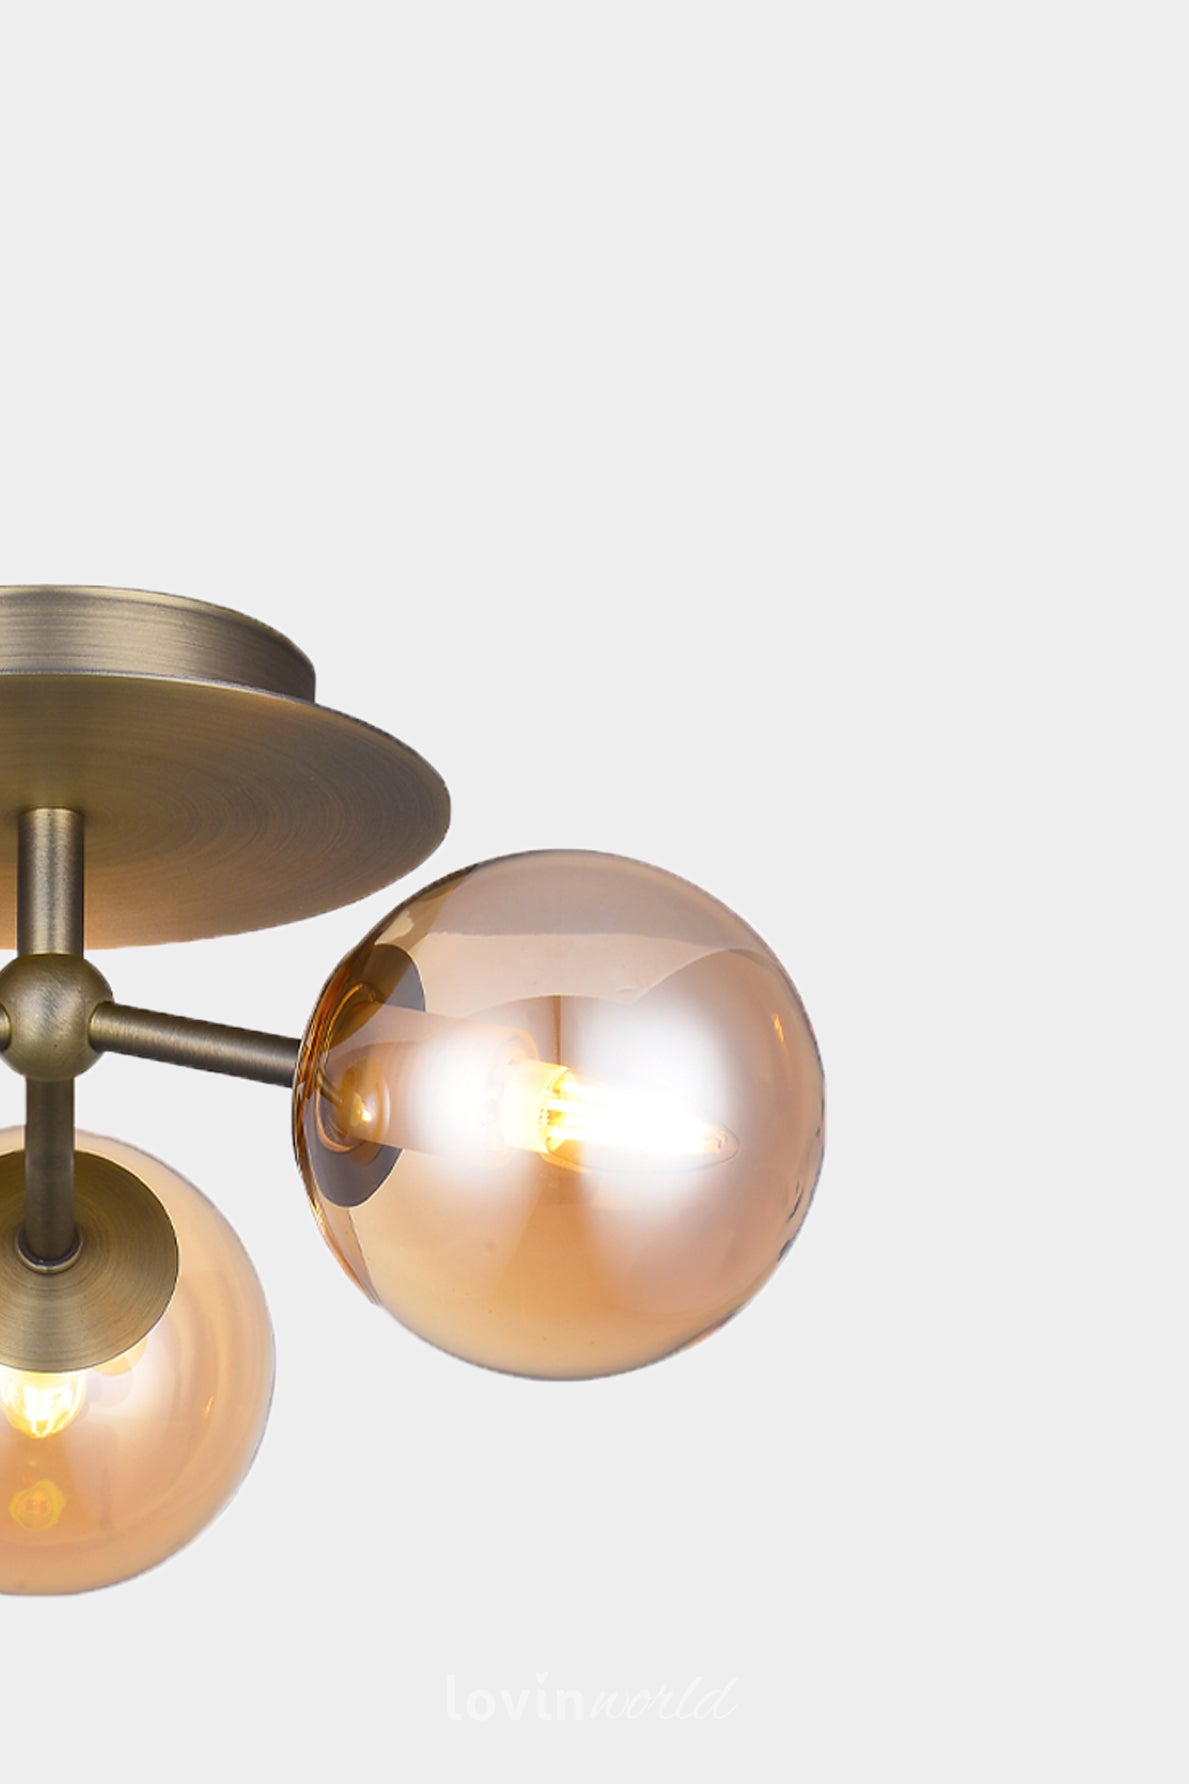 Lampada da soffitto Atom, in colore ambra-LovinWorld